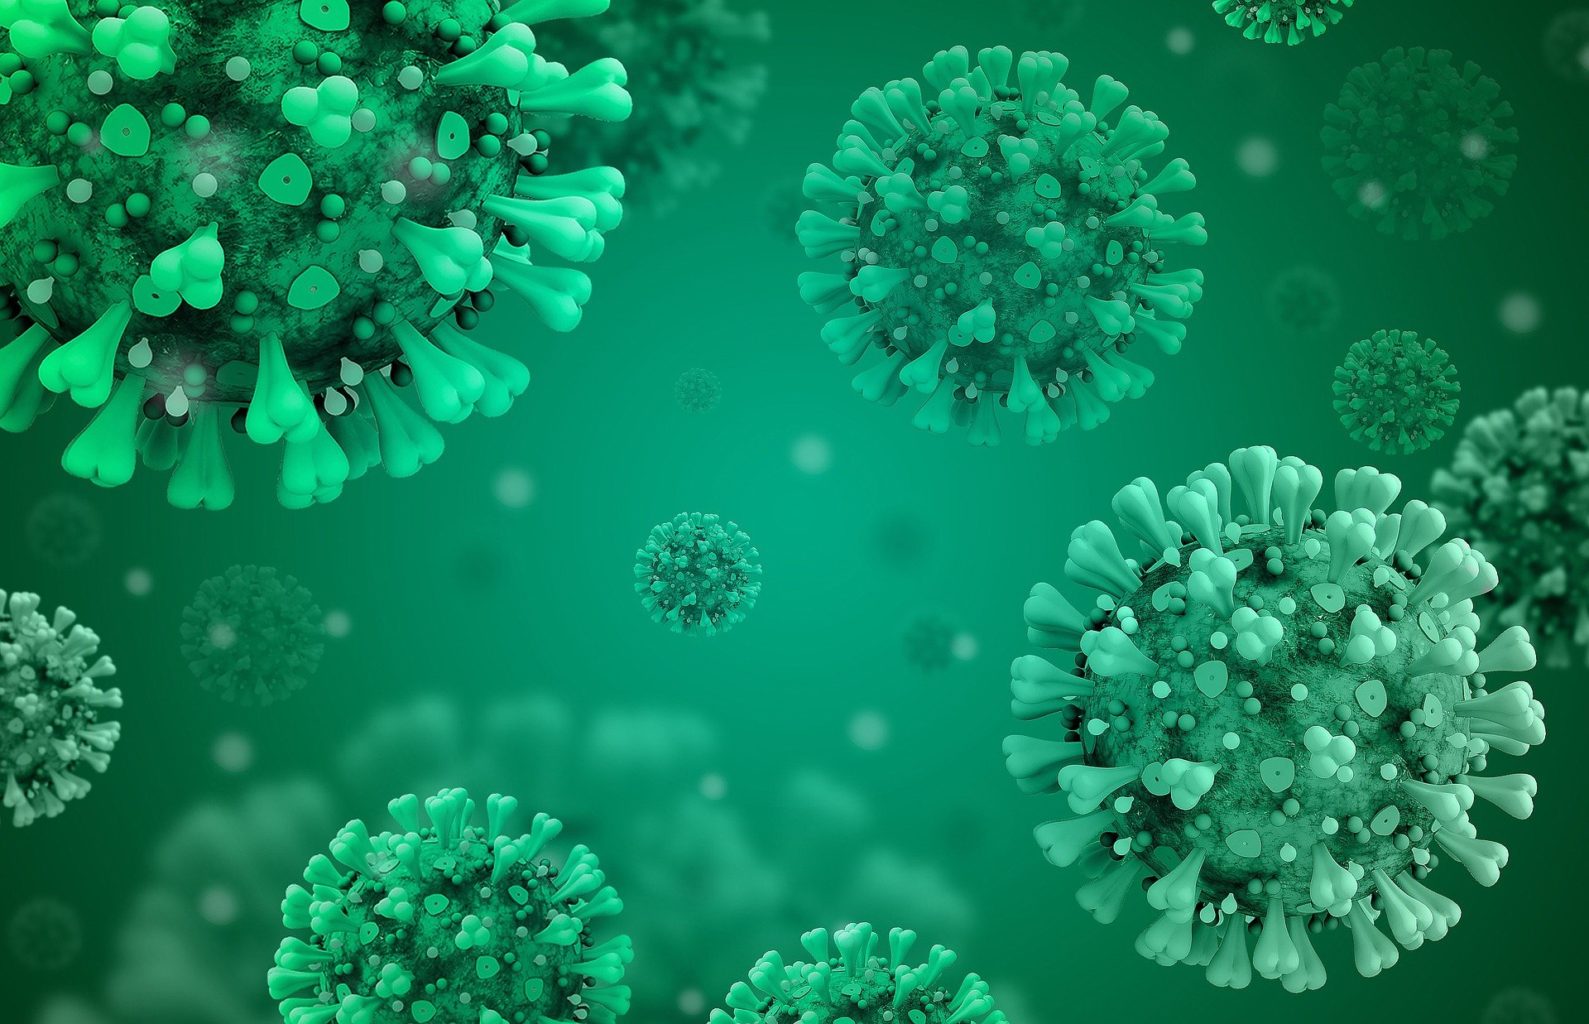 Казахстанский штамм коронавируса предложили назвать «вирусом Нур-Султана»